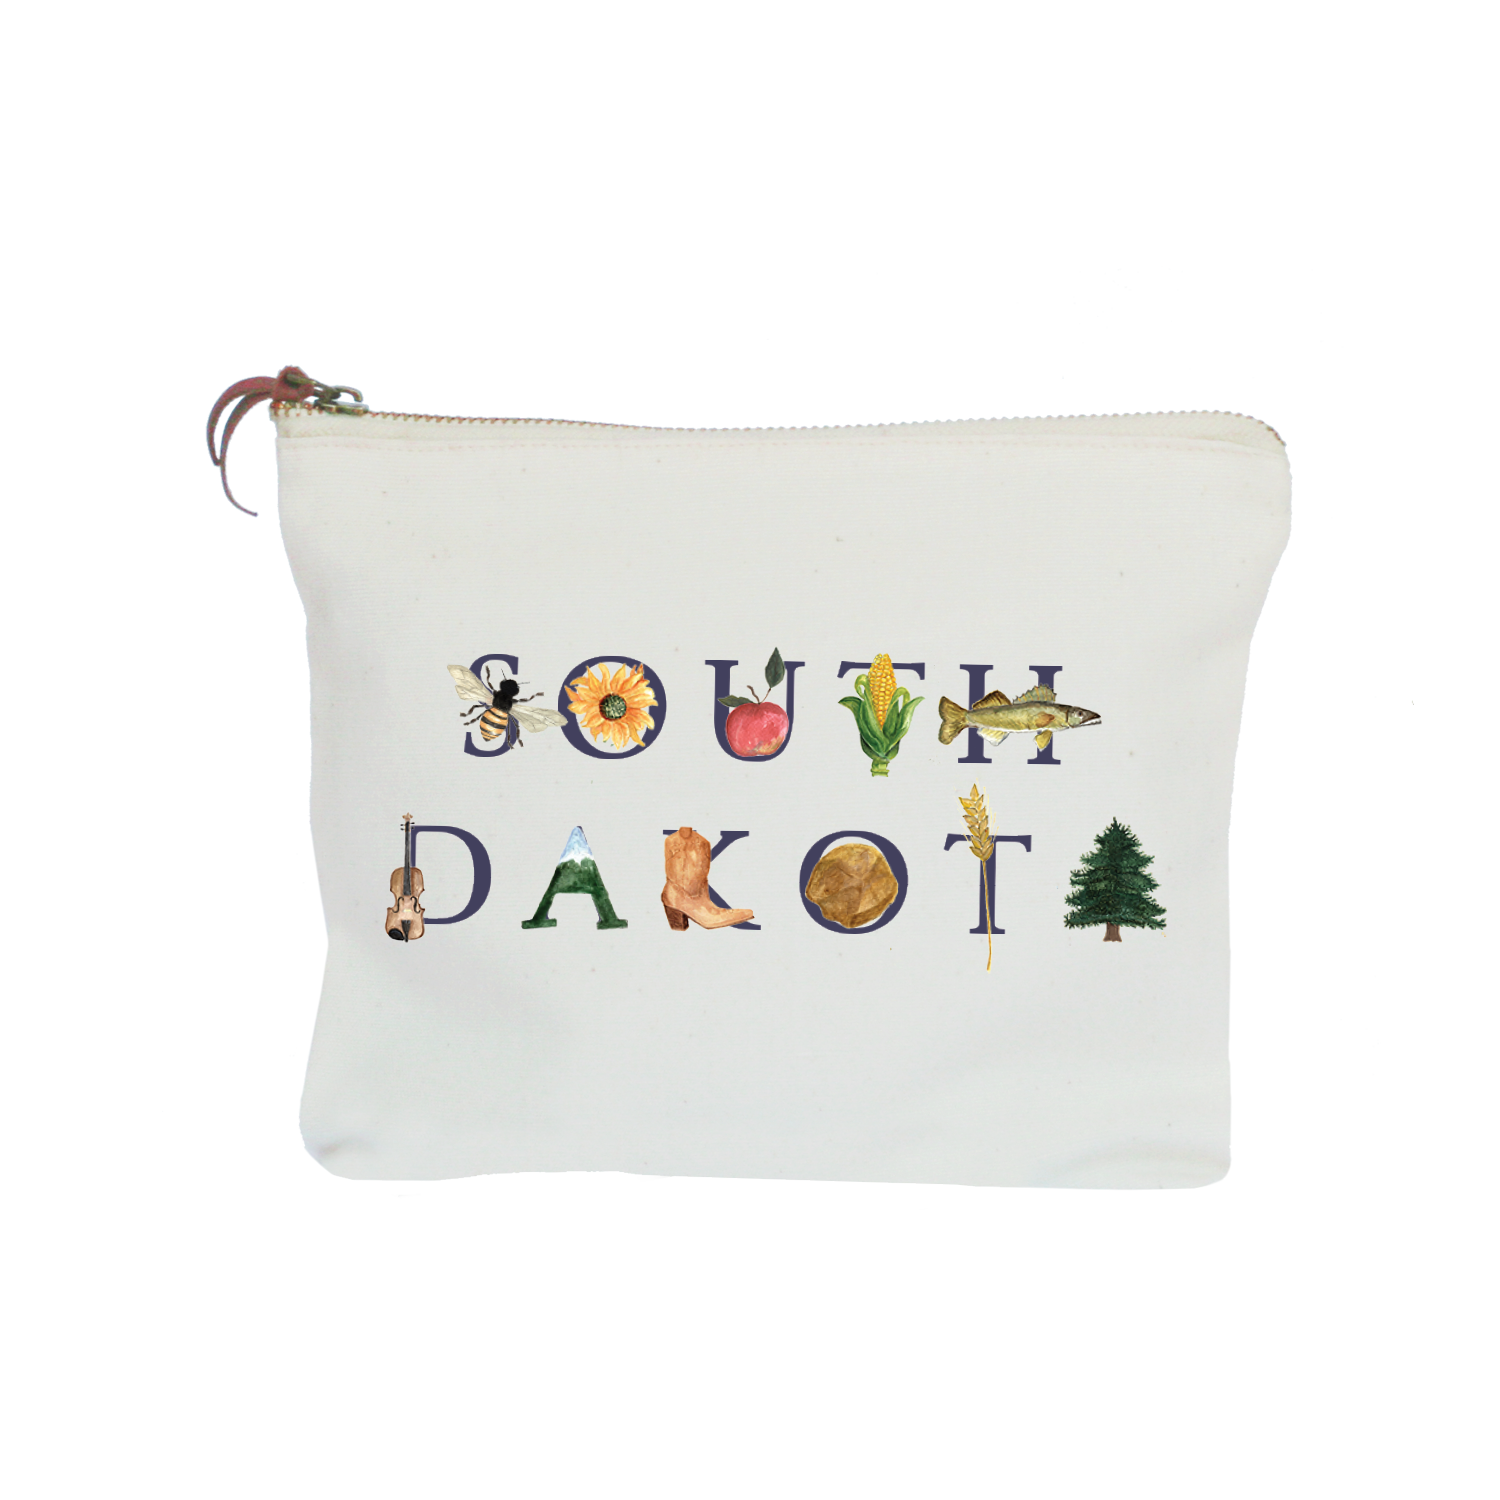 South Dakota zipper pouch